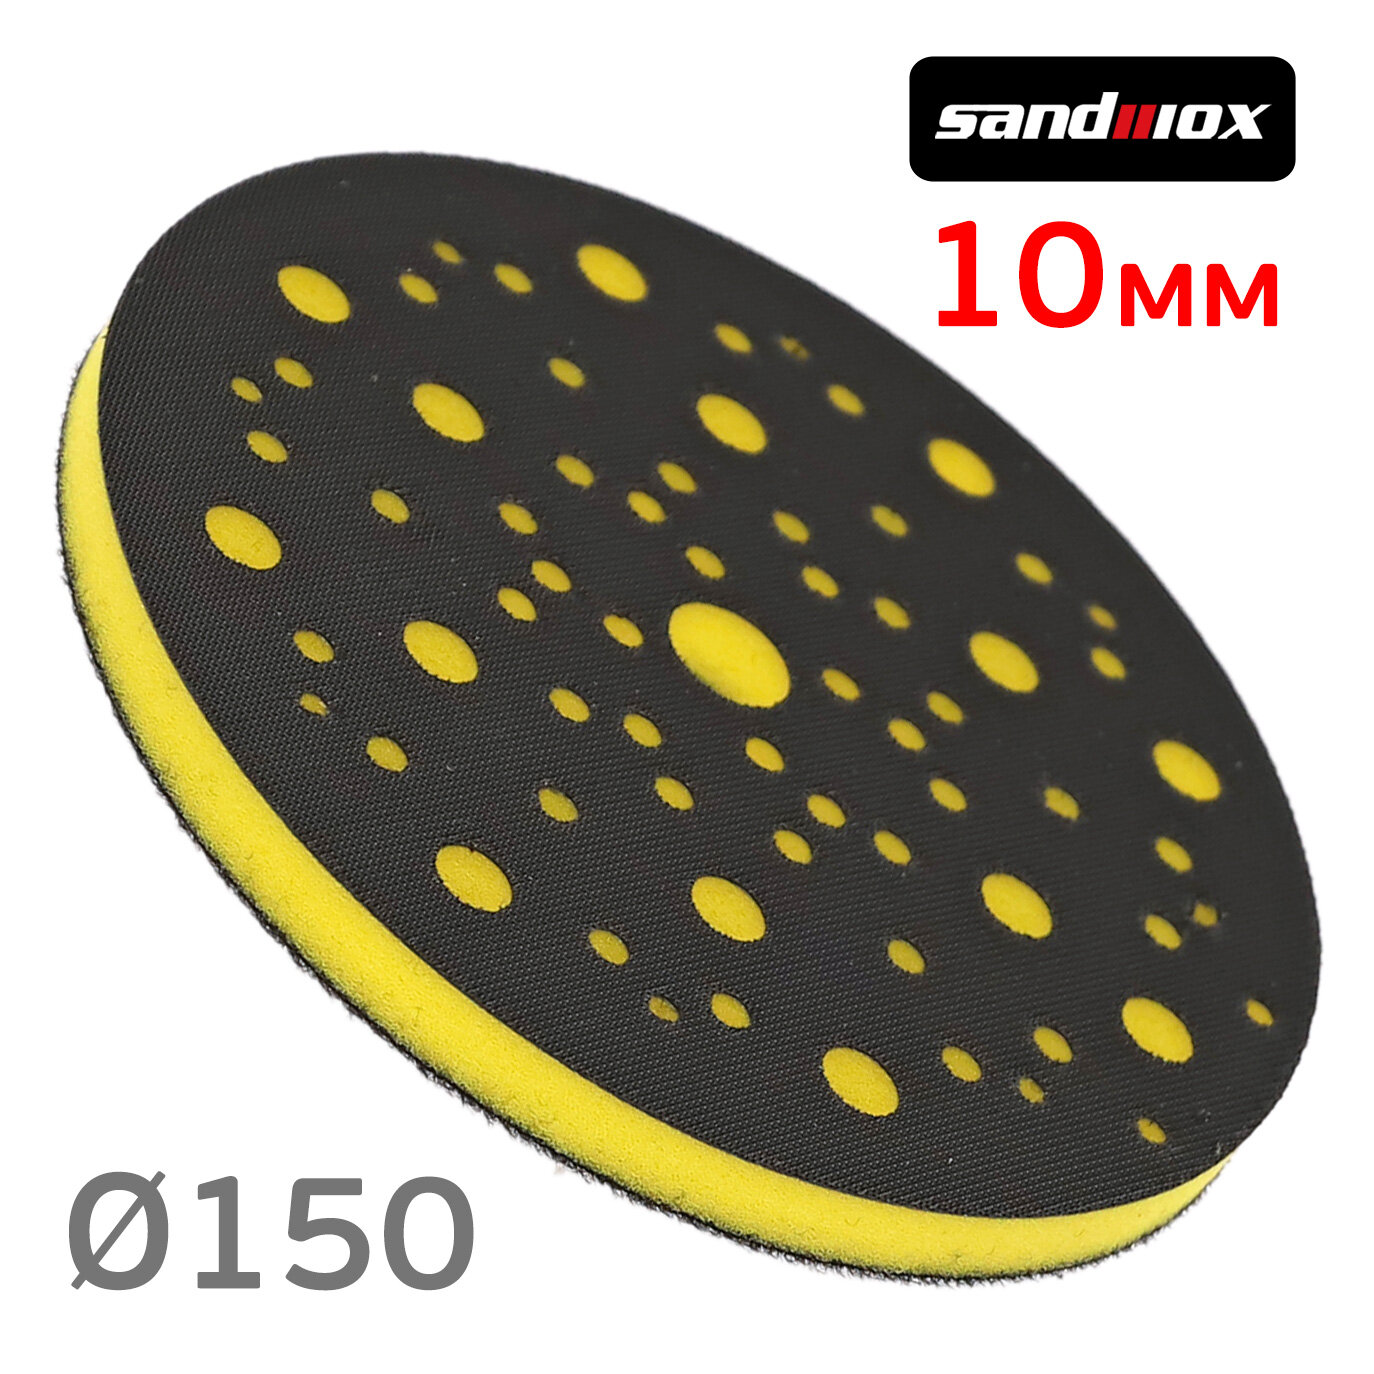 Проставка на поролоне Sandwox (150мм; 10мм) желтая 67отв защитная для шлифовки рельефной поверхности